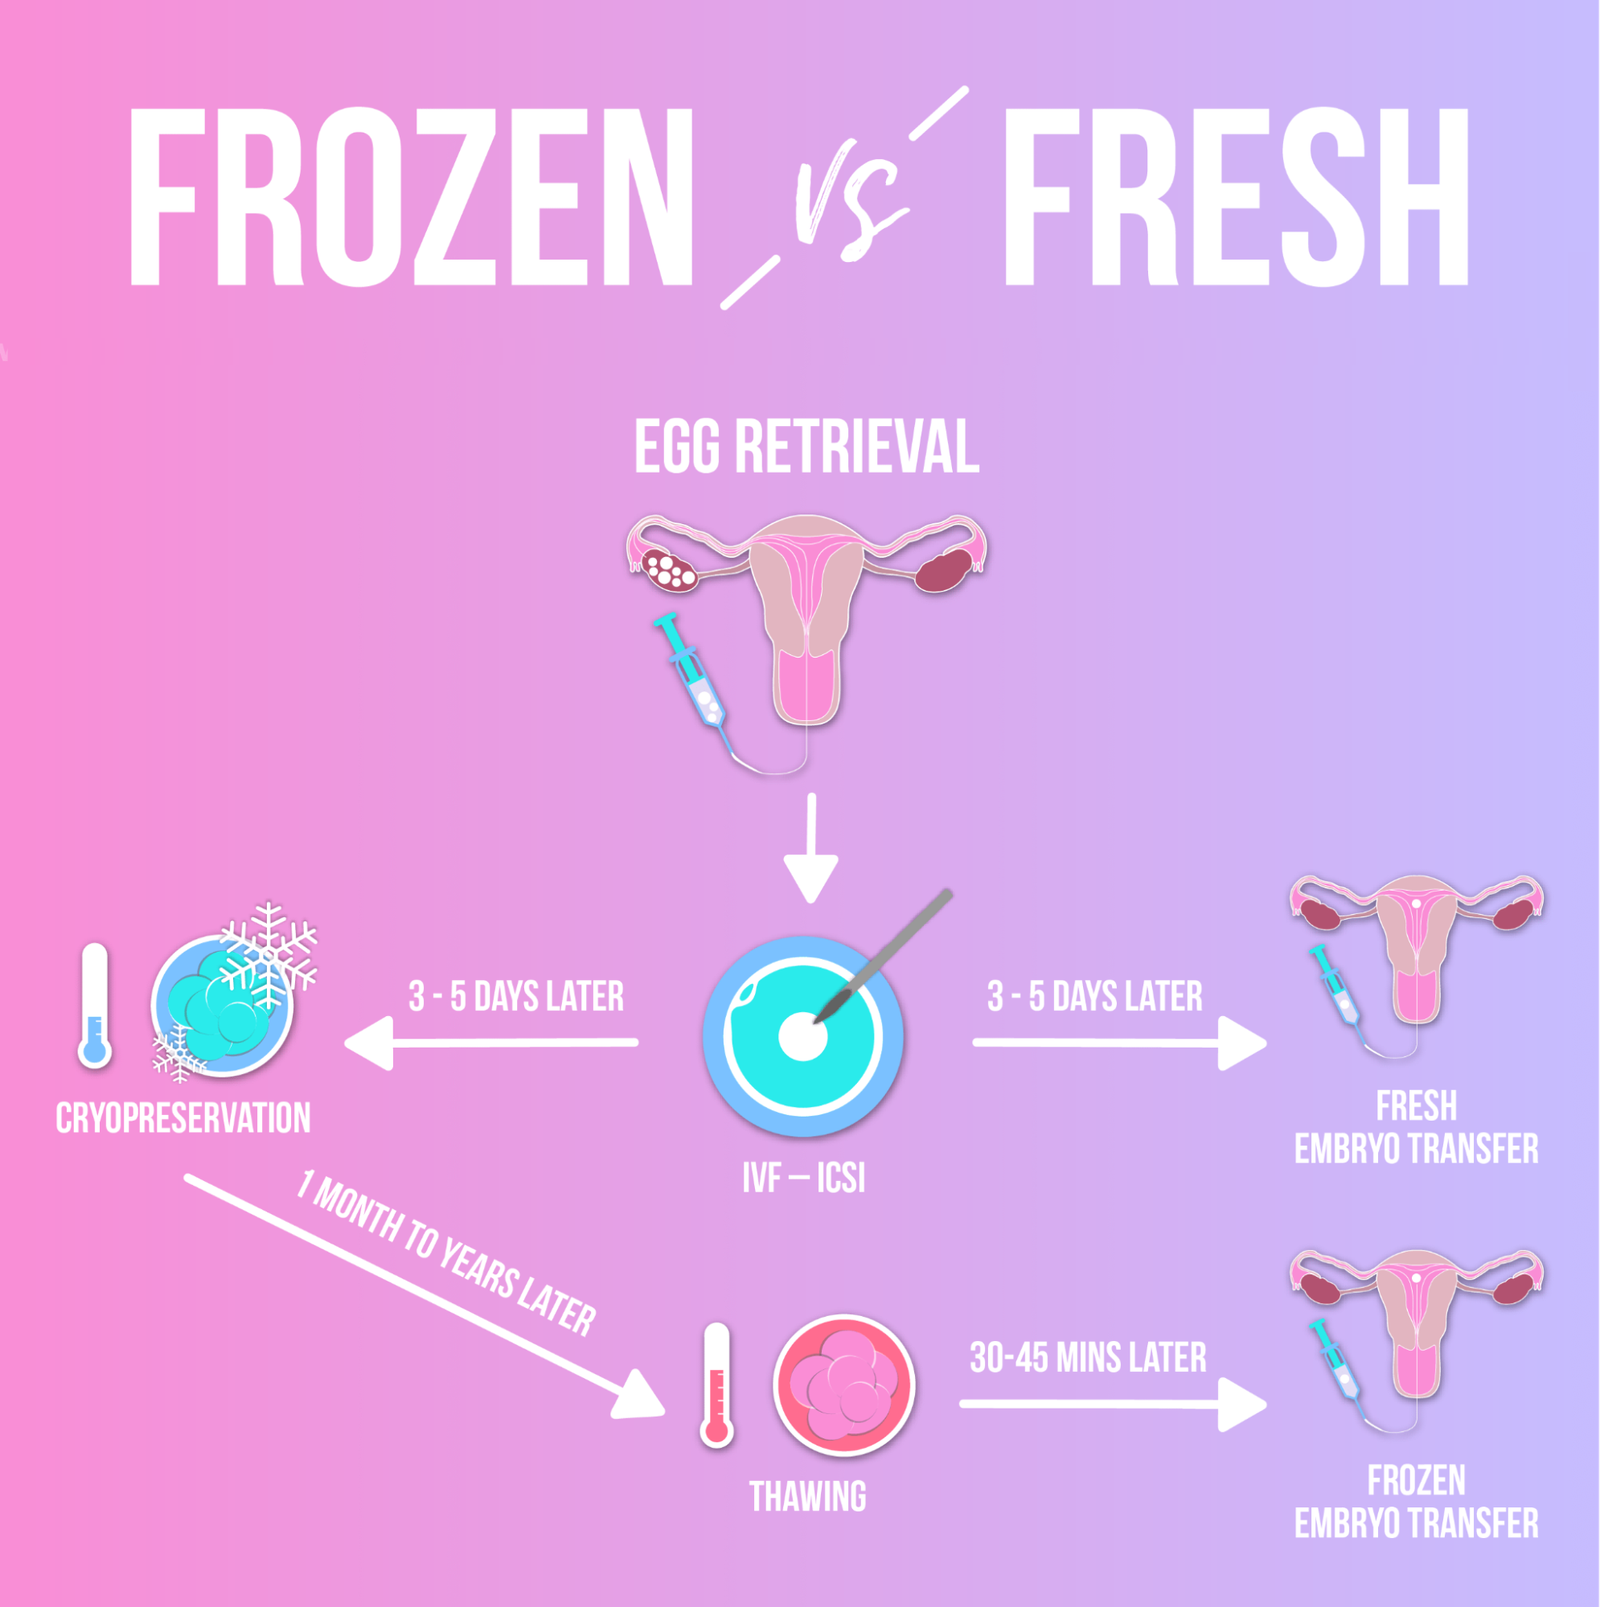 Frozen Embryos As Good As Fresh Embryos